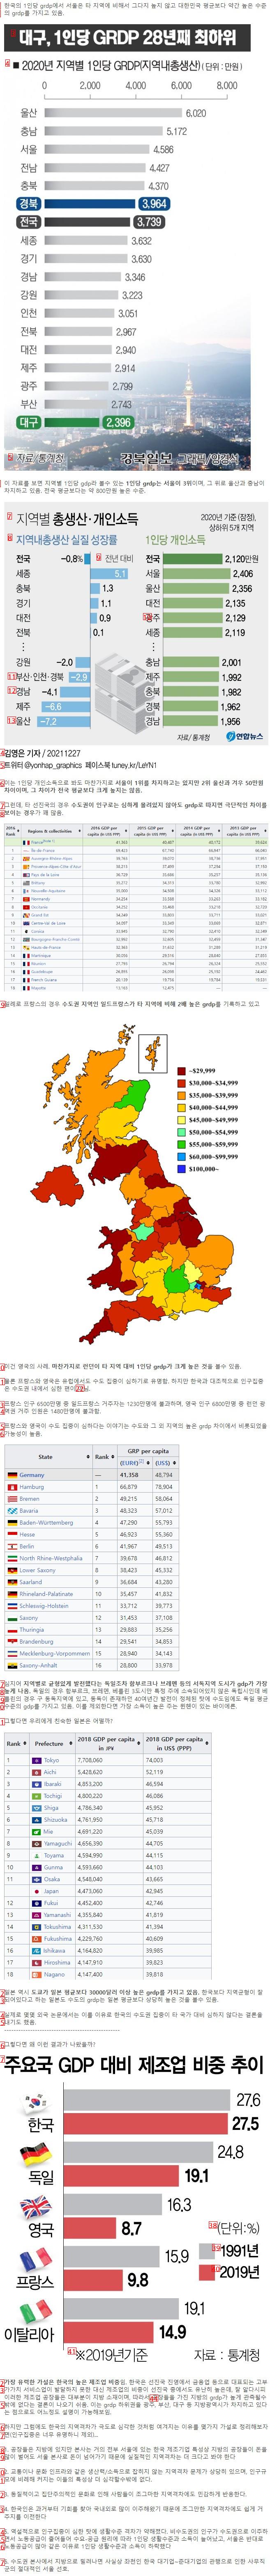 韓国の地域格差で特異な点一つ